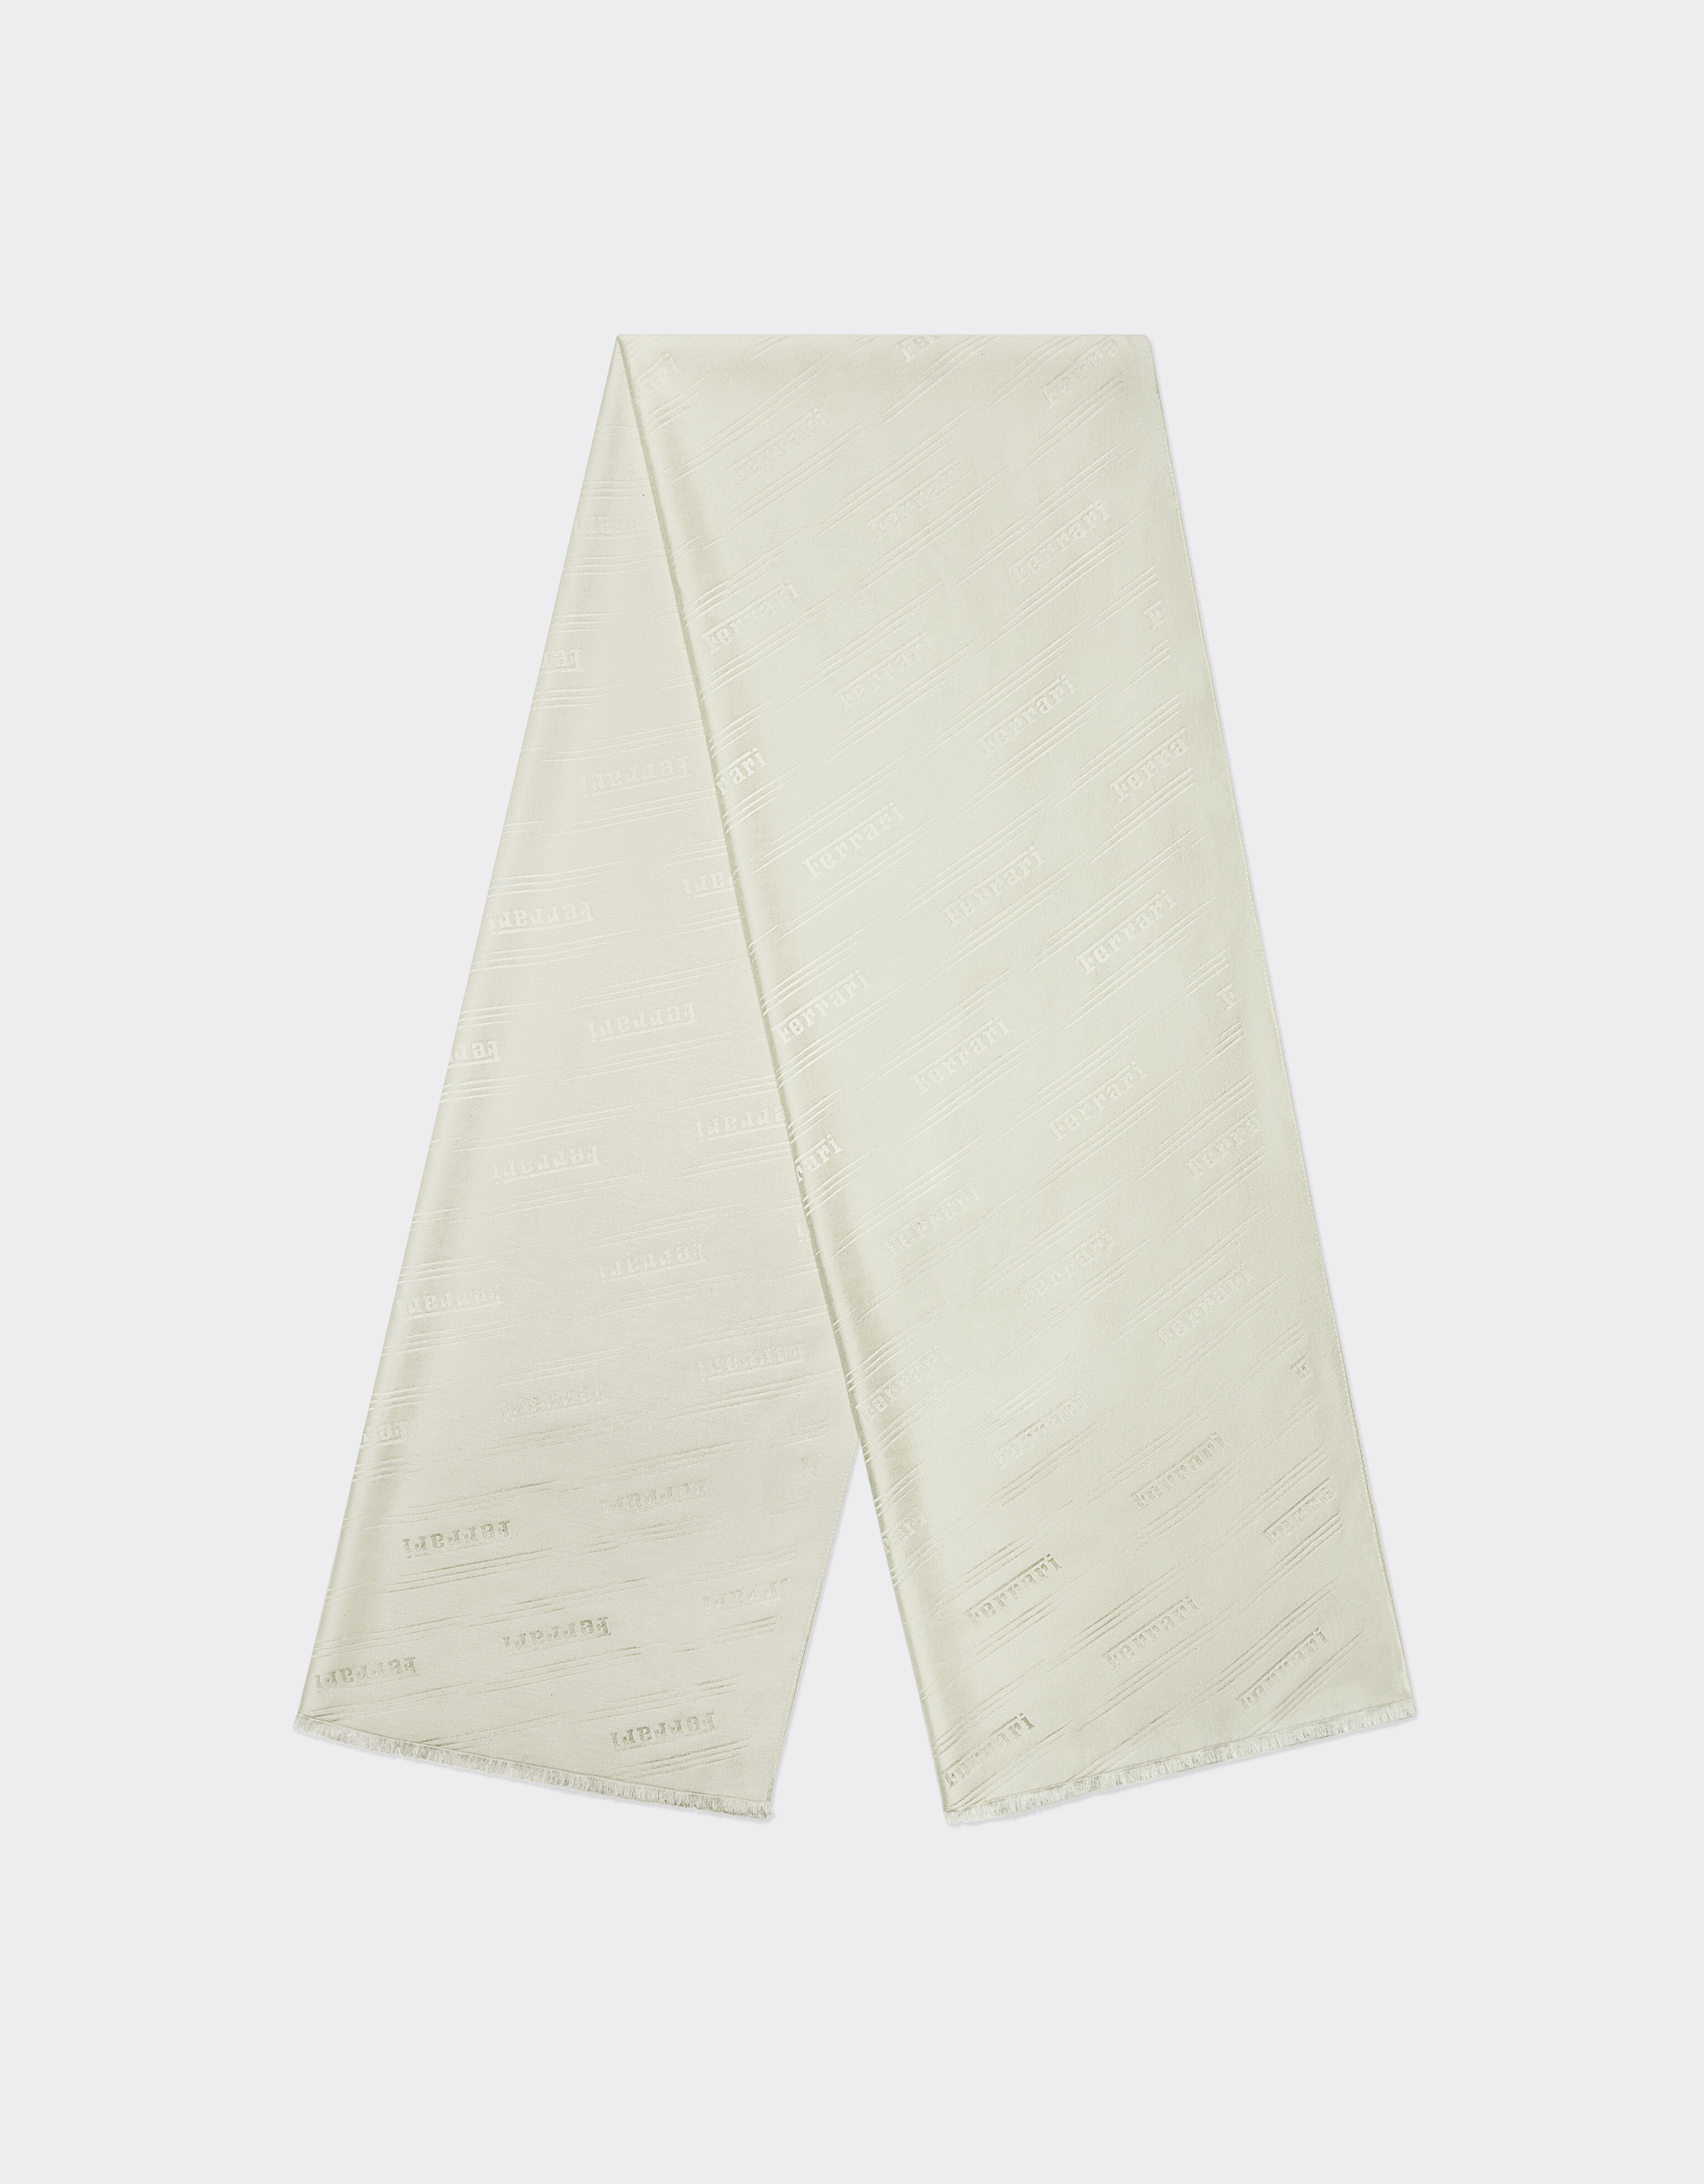 Ferrari Scarf in silk and cashmere with Ferrari motif Optical White 47073f